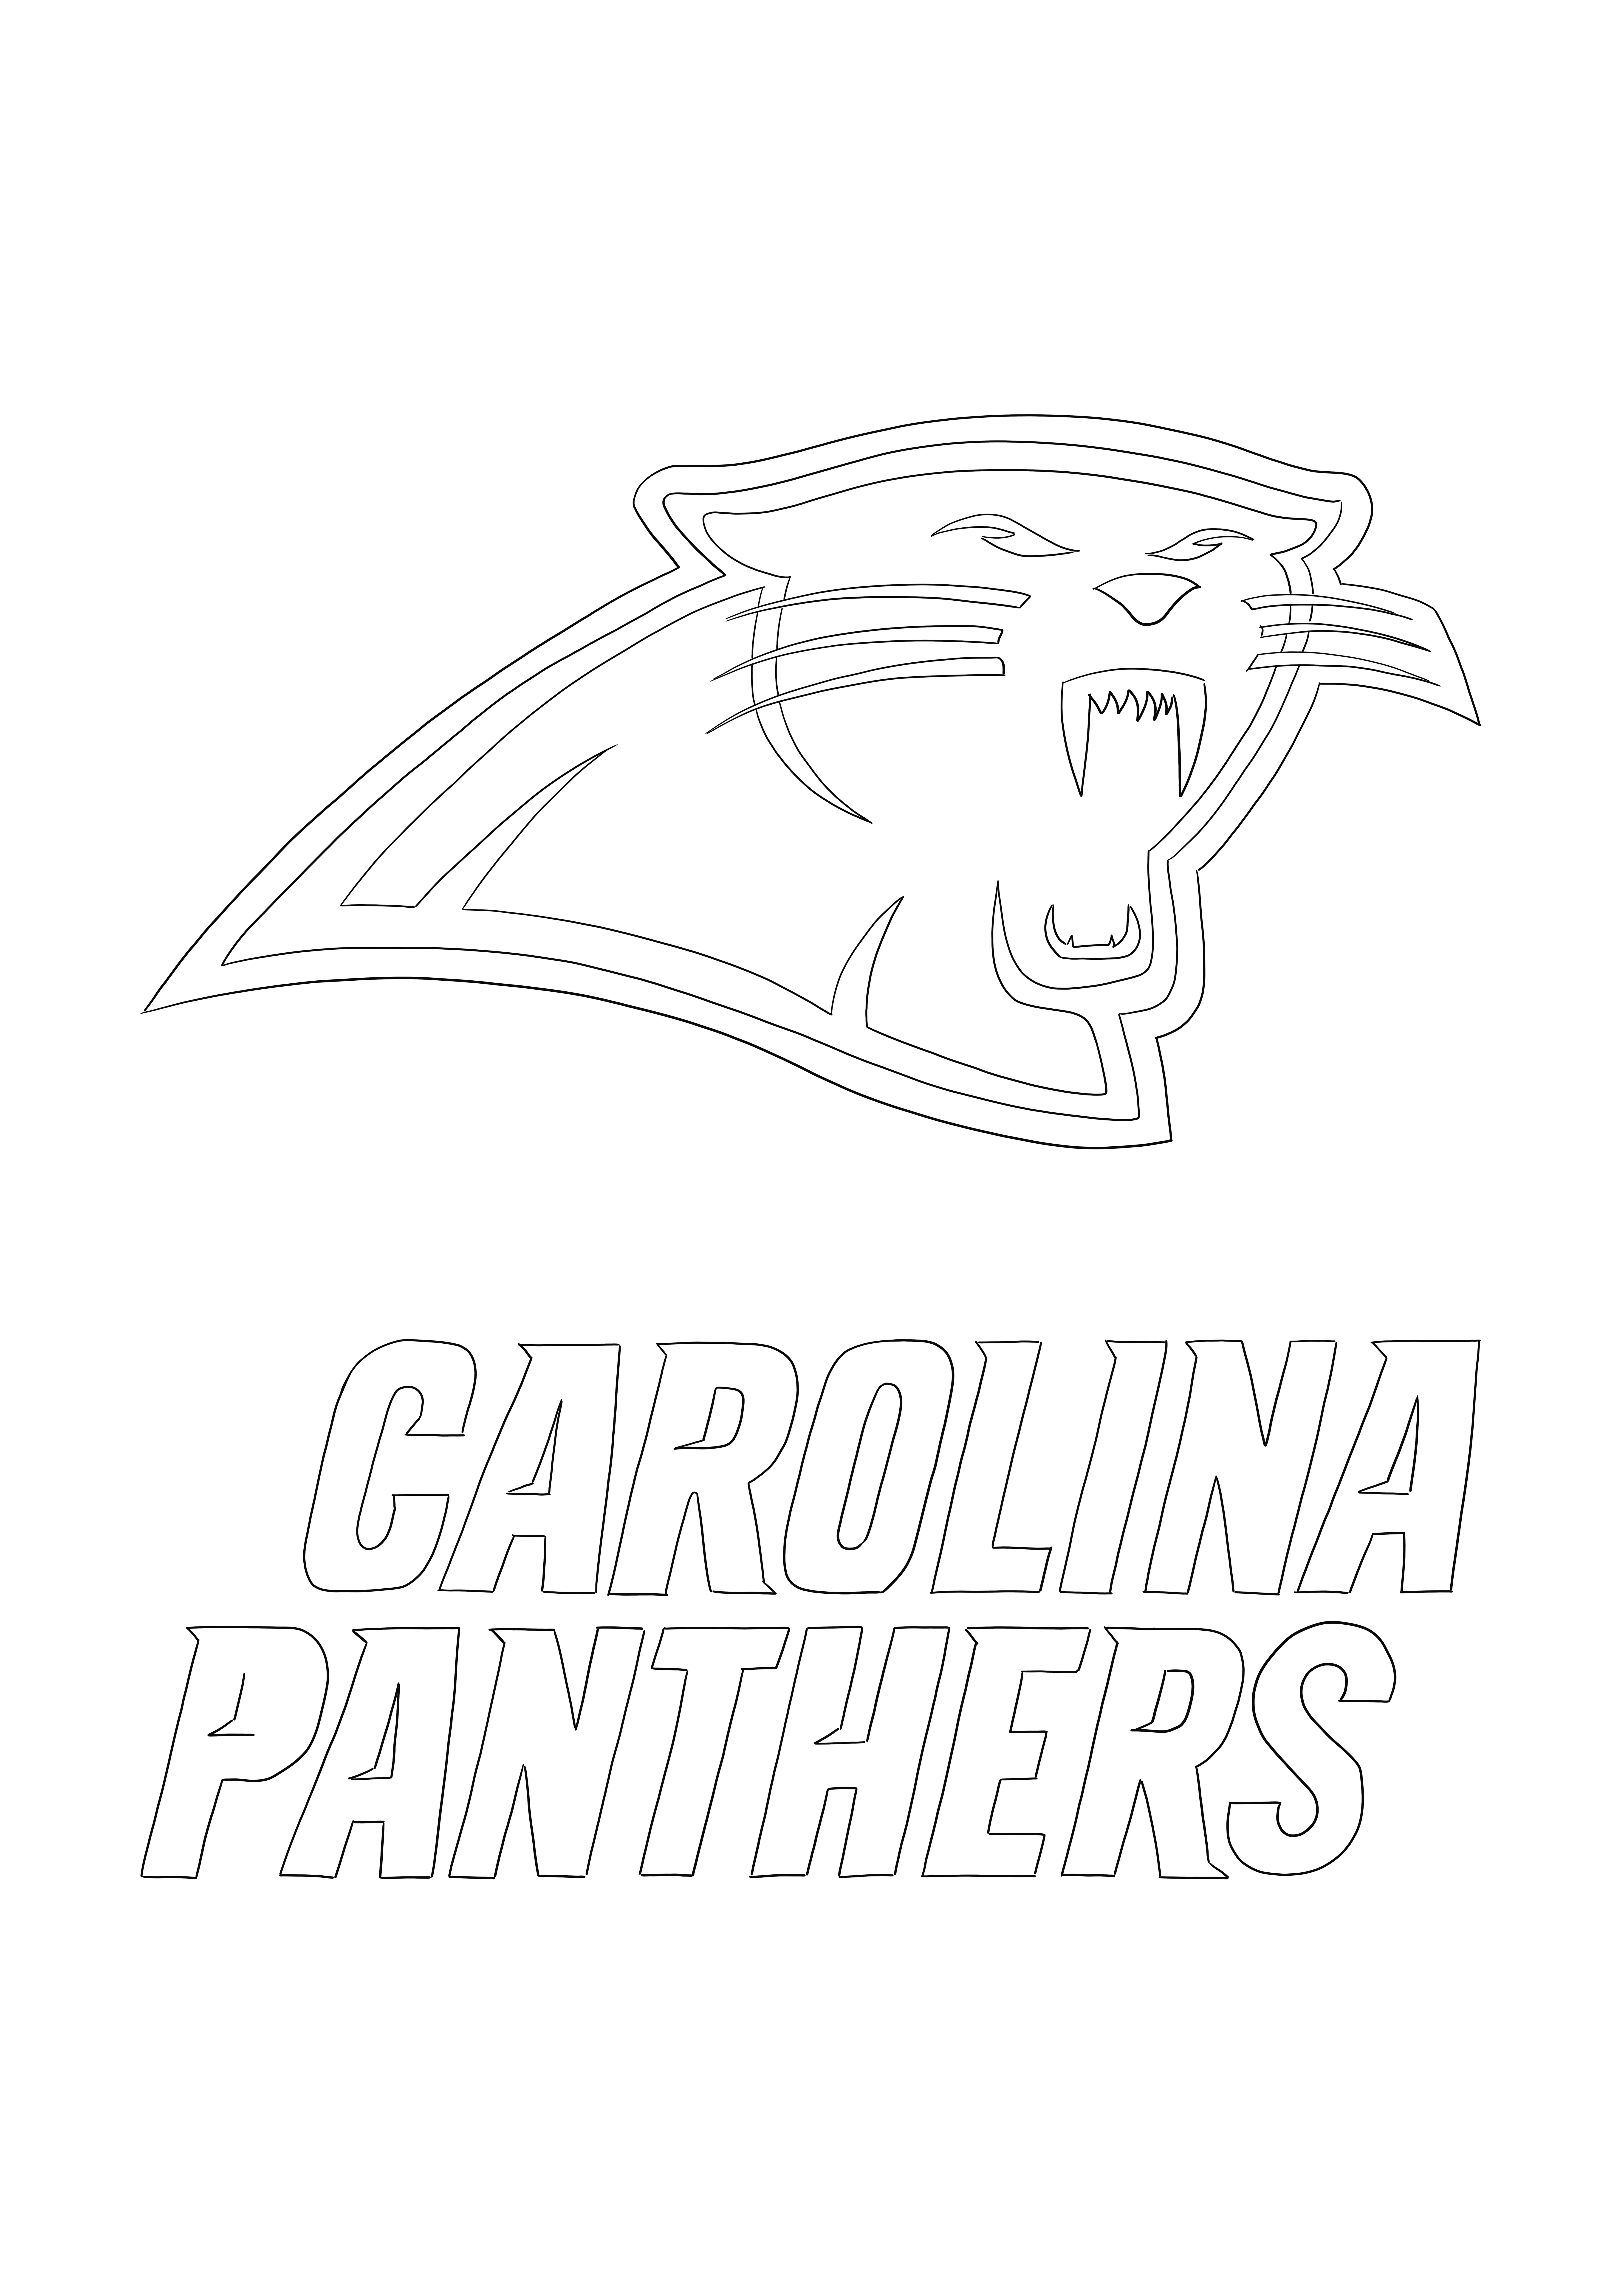 Logo Carolina Panthers imprimabil gratuit la colorat pentru toți cei care iubesc NFL